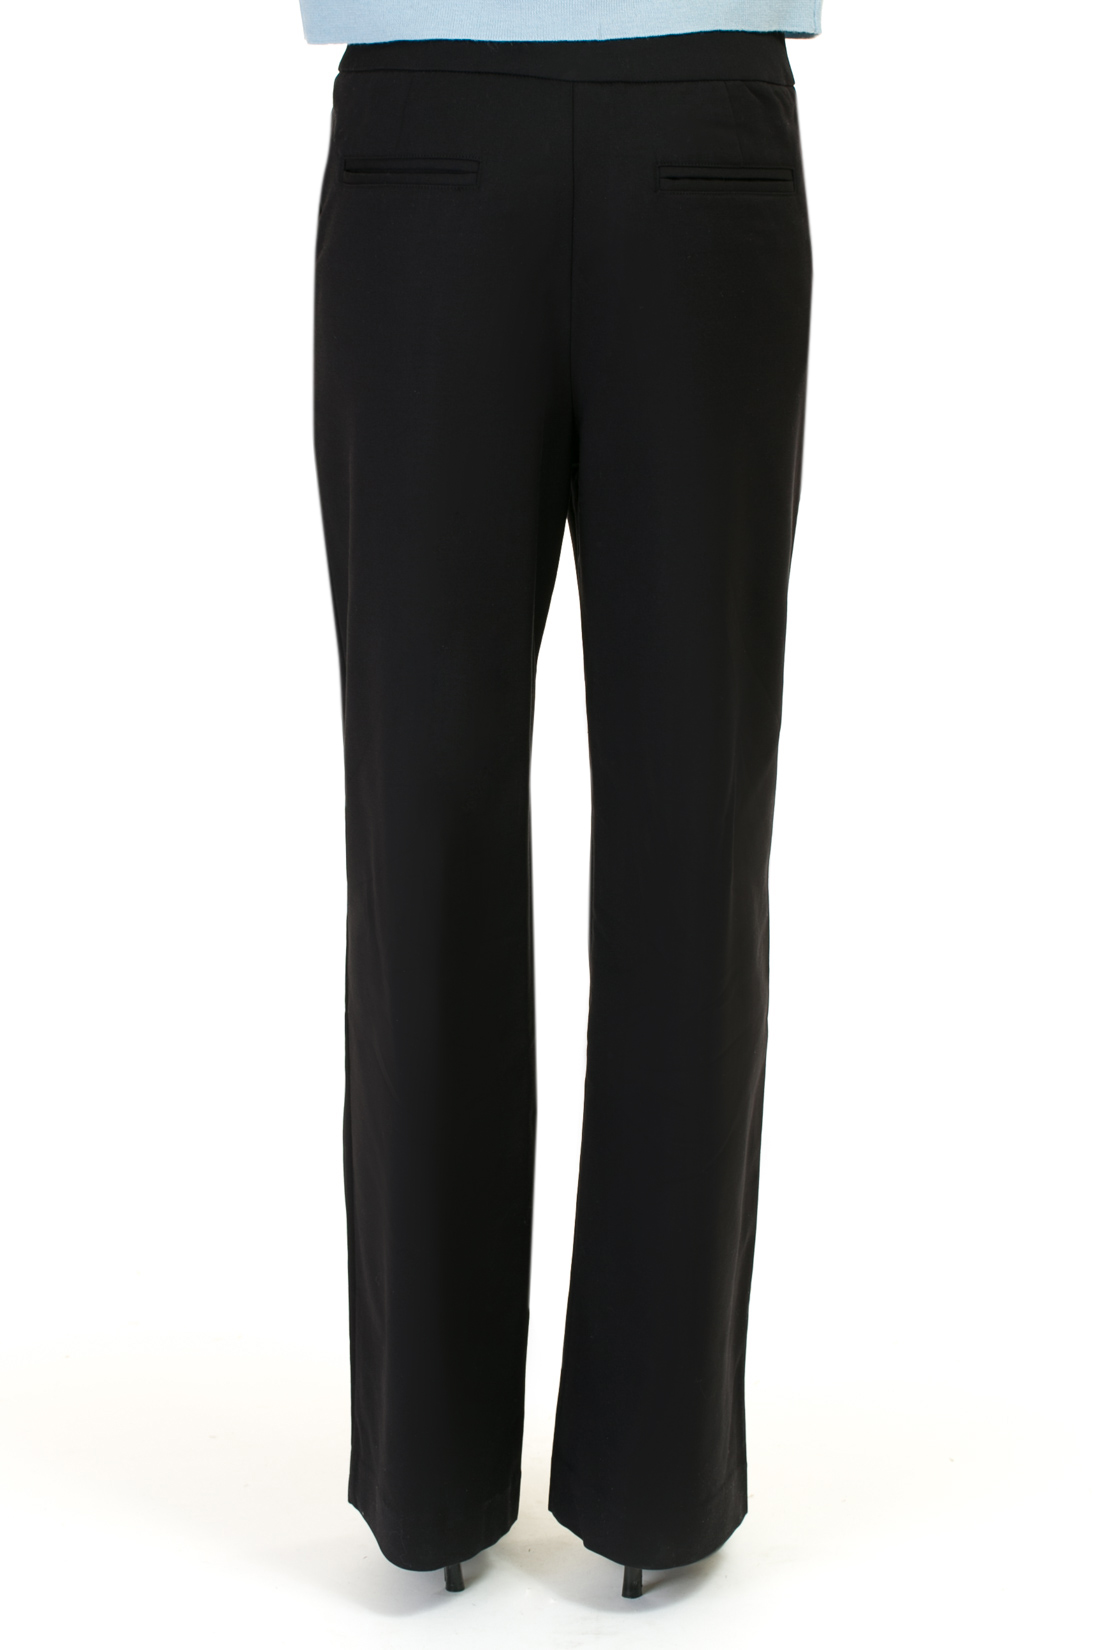 Широкие классические брюки (арт. baon B297026), размер L, цвет черный Широкие классические брюки (арт. baon B297026) - фото 2